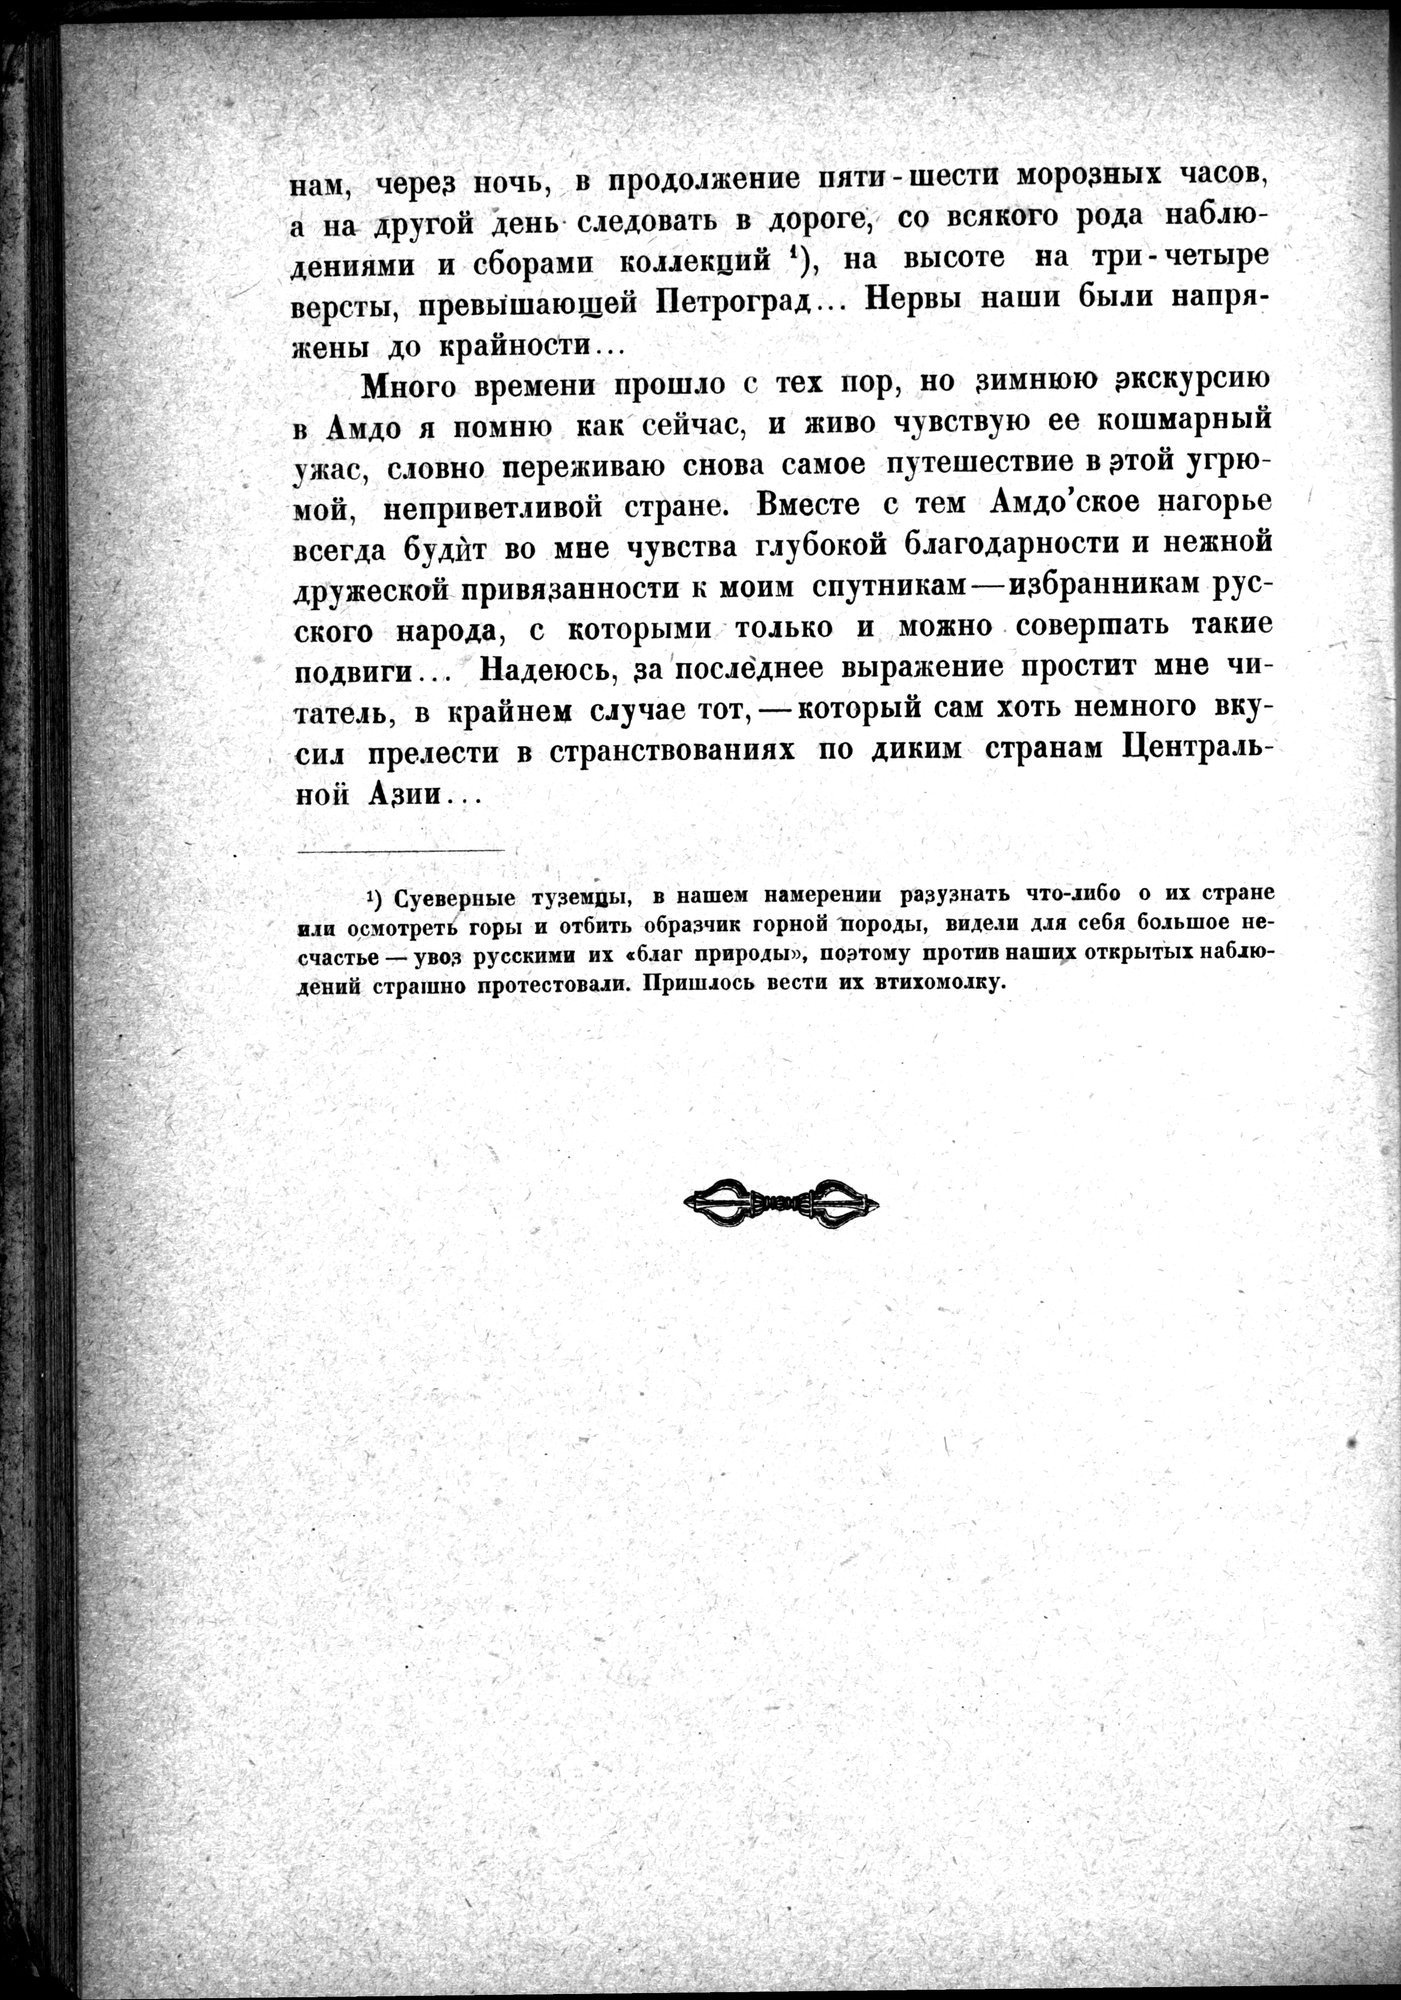 Mongoliya i Amdo i mertby gorod Khara-Khoto : vol.1 / 492 ページ（白黒高解像度画像）